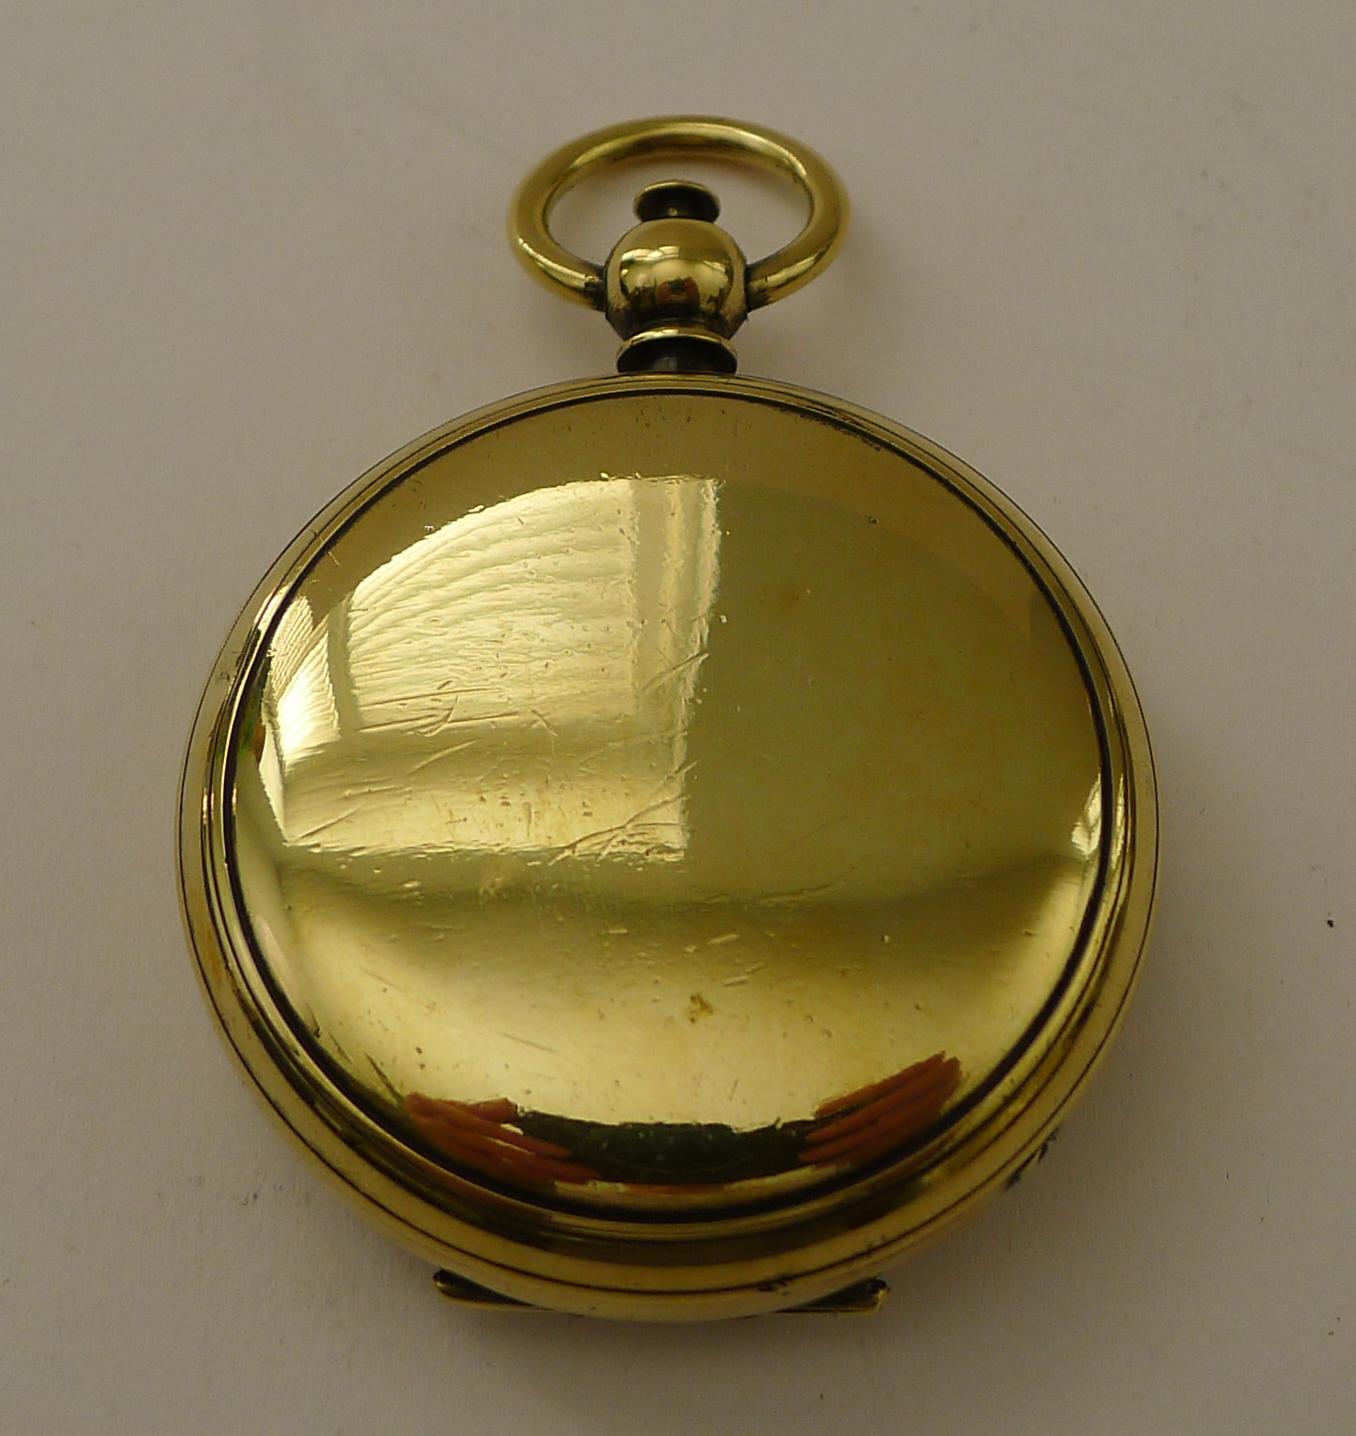 Une belle boussole de la fin de l'époque victorienne ou de l'époque édouardienne avec un couvercle à charnière, le petit bouton sur le dessus servait à l'ouvrir, tout comme une montre de poche.

Le cadran a la chance d'avoir un numéro